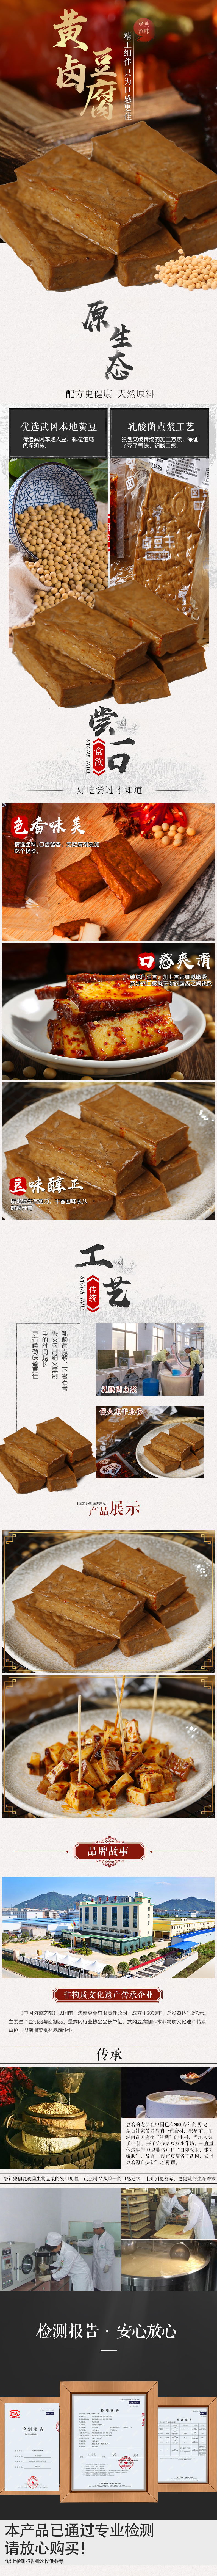 武冈豆腐